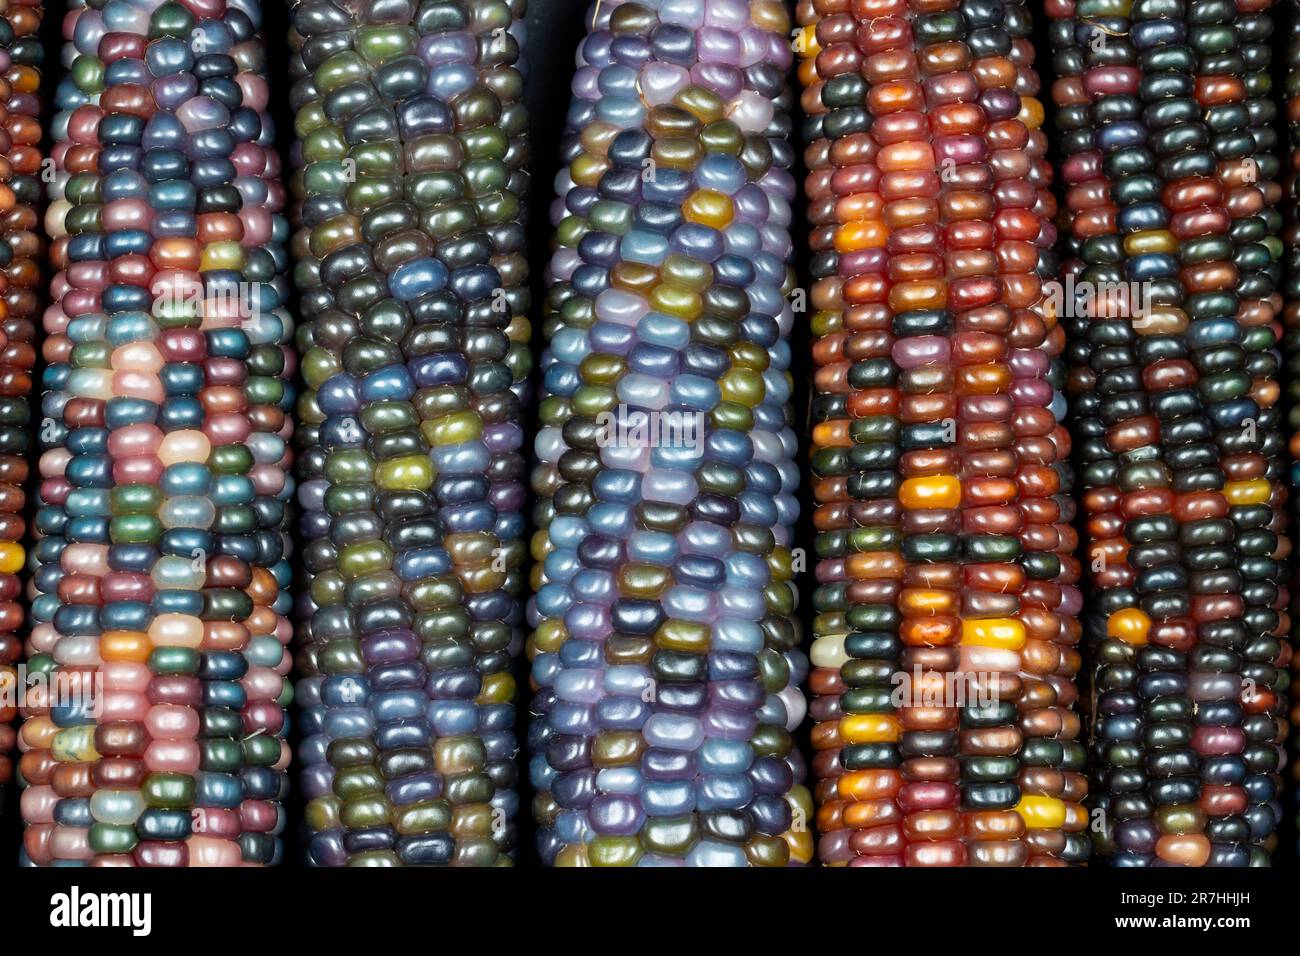 Glass Gem corn (botanicamente classificato come Zea mays). Questa varietà produce gorgeous sfere di vetro multicolore- o gemme-come le pannocchie. Foto Stock